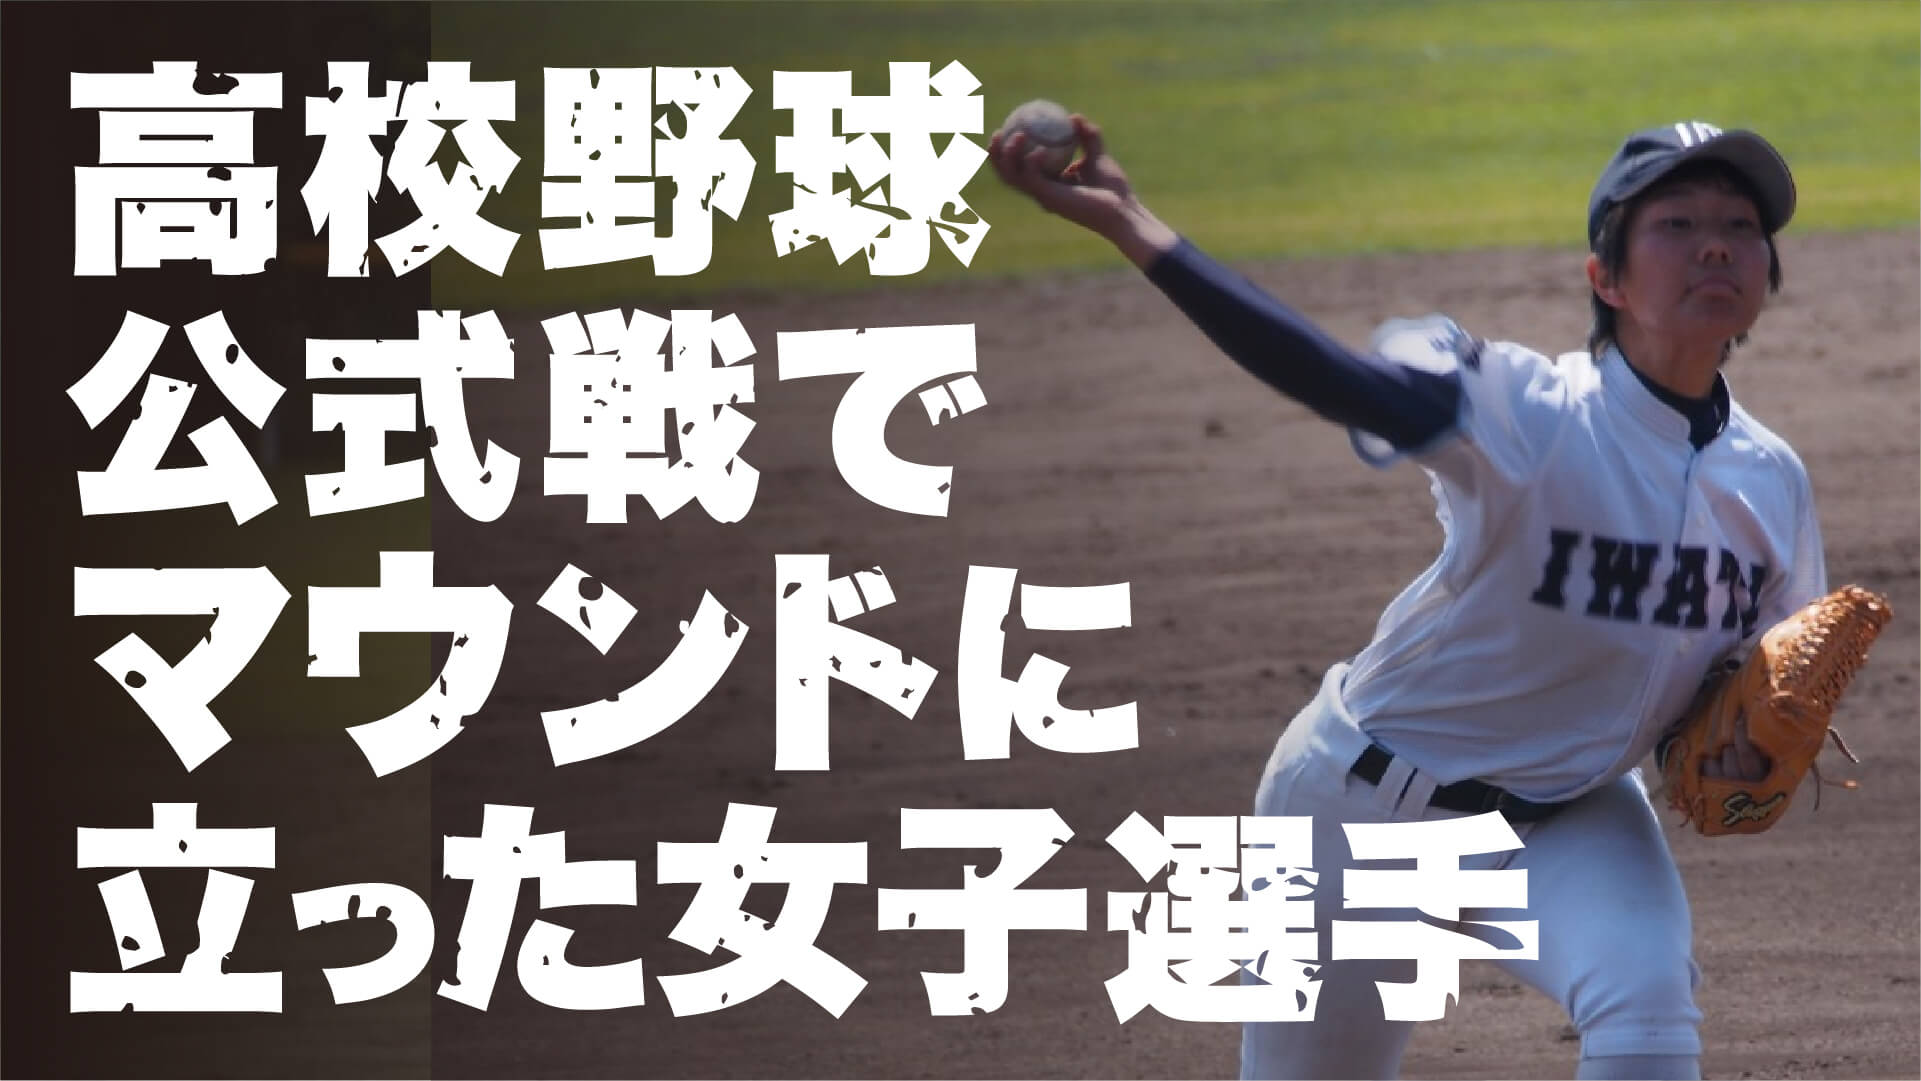 高校野球史上初!?公式戦でマウンドに立った女子野球選手、島田朱諒の激動の野球人生